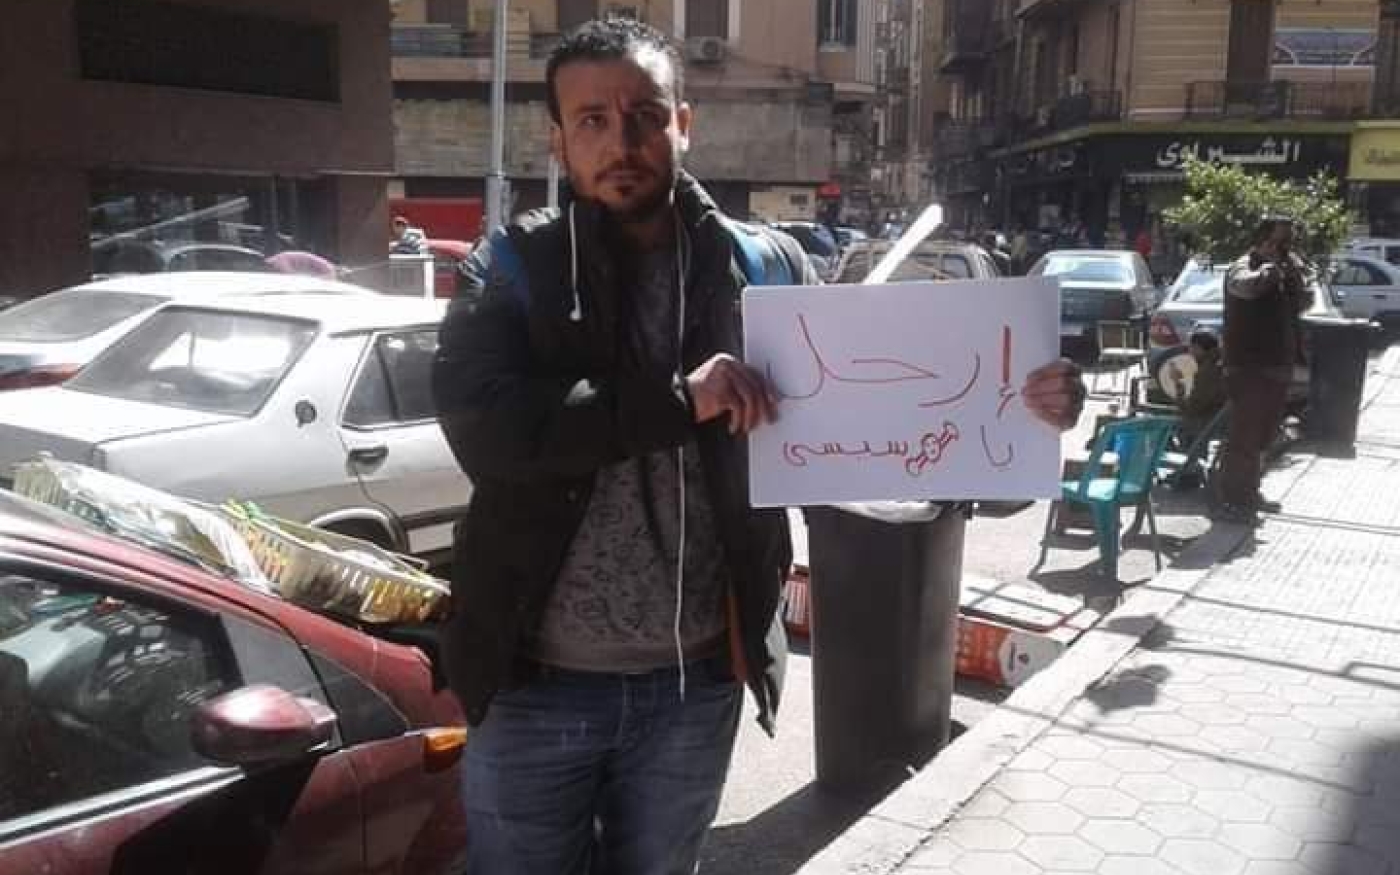 Un Égyptien, Ahmed Mohy, manifeste seul en tenant une pancarte « Sissi démission » avant d’être arrêté (réseaux sociaux)